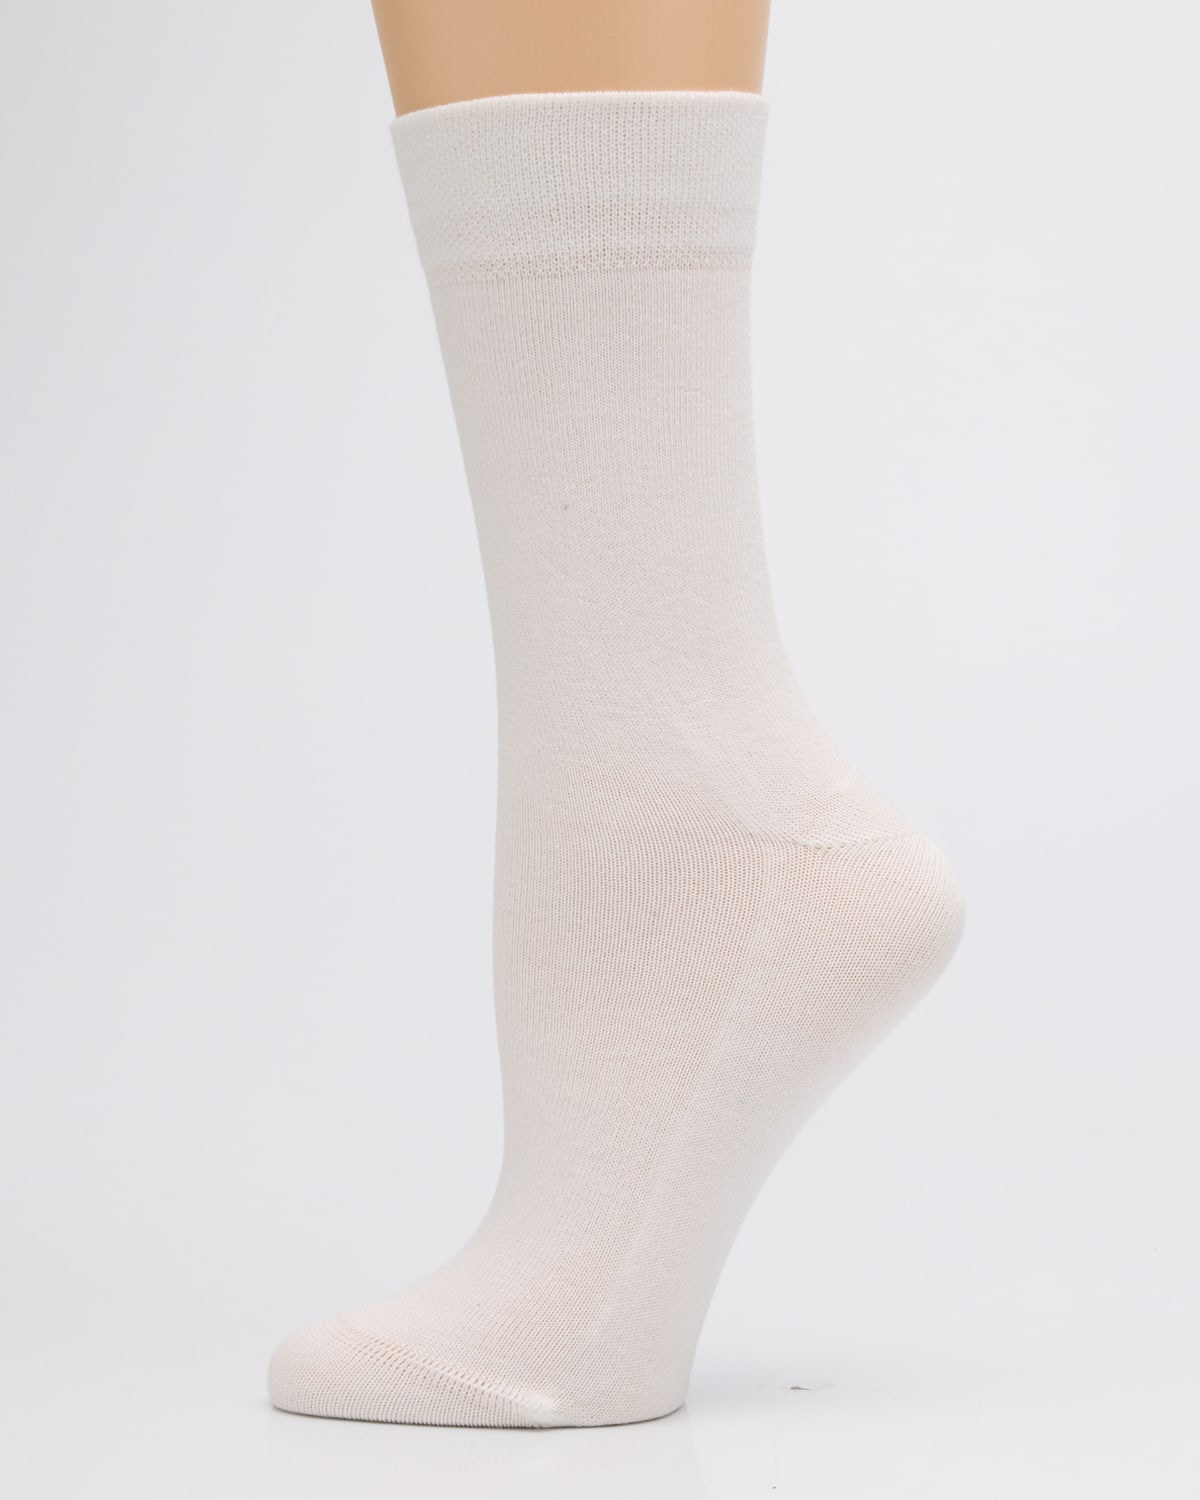 Falke Sensitive London Crew Socks In White